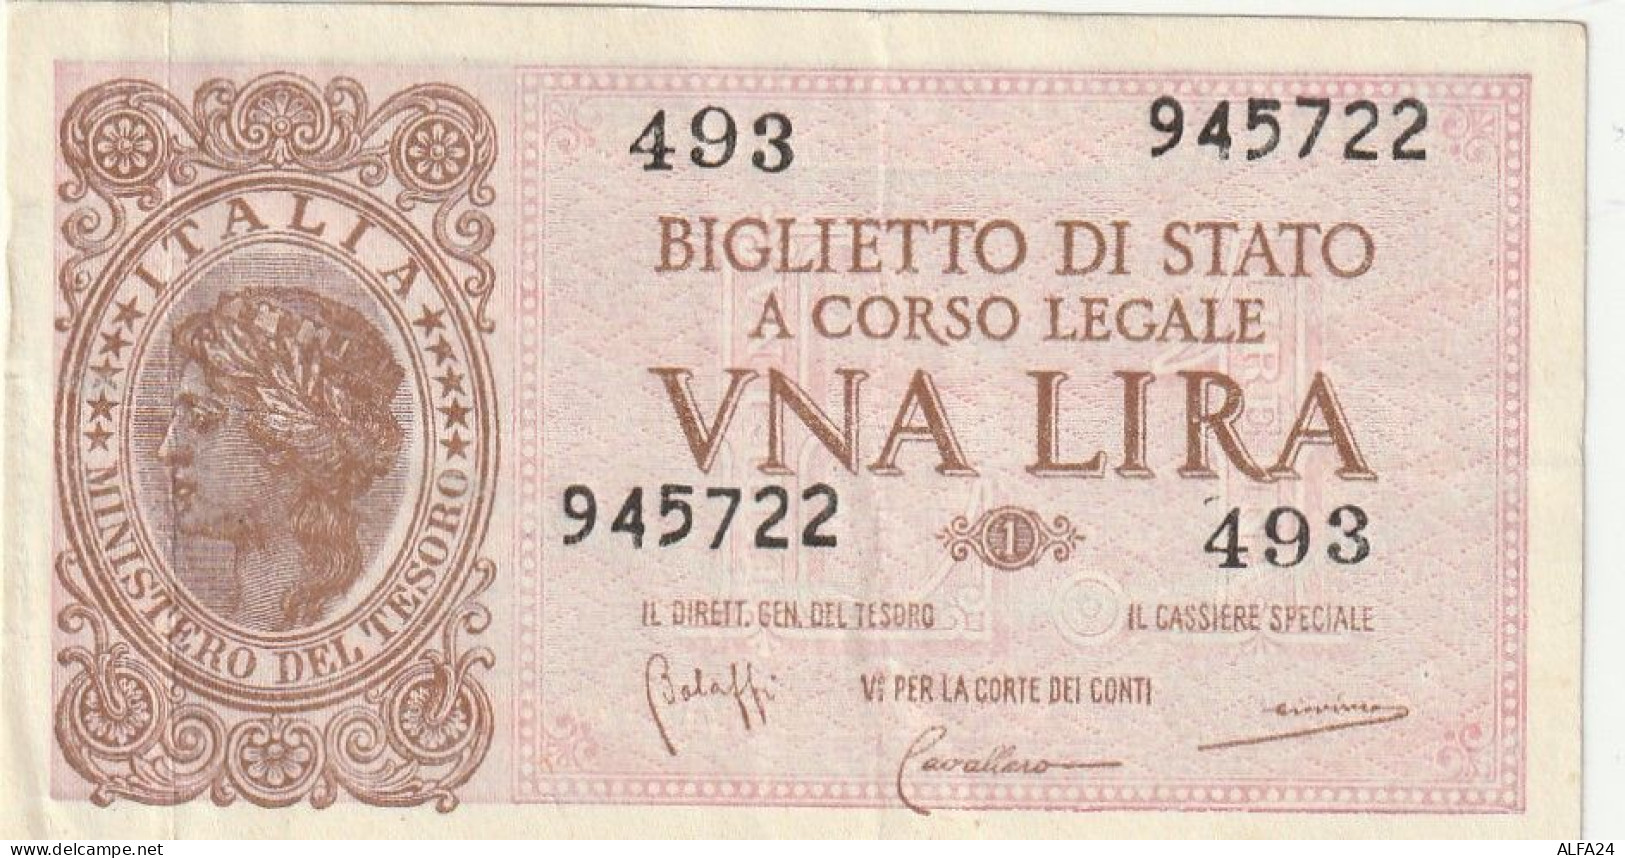 BANCONOTA BIGLIETTO DI STATO ITALIA 1 LIRA EF  (B_341 - Italië – 1 Lira